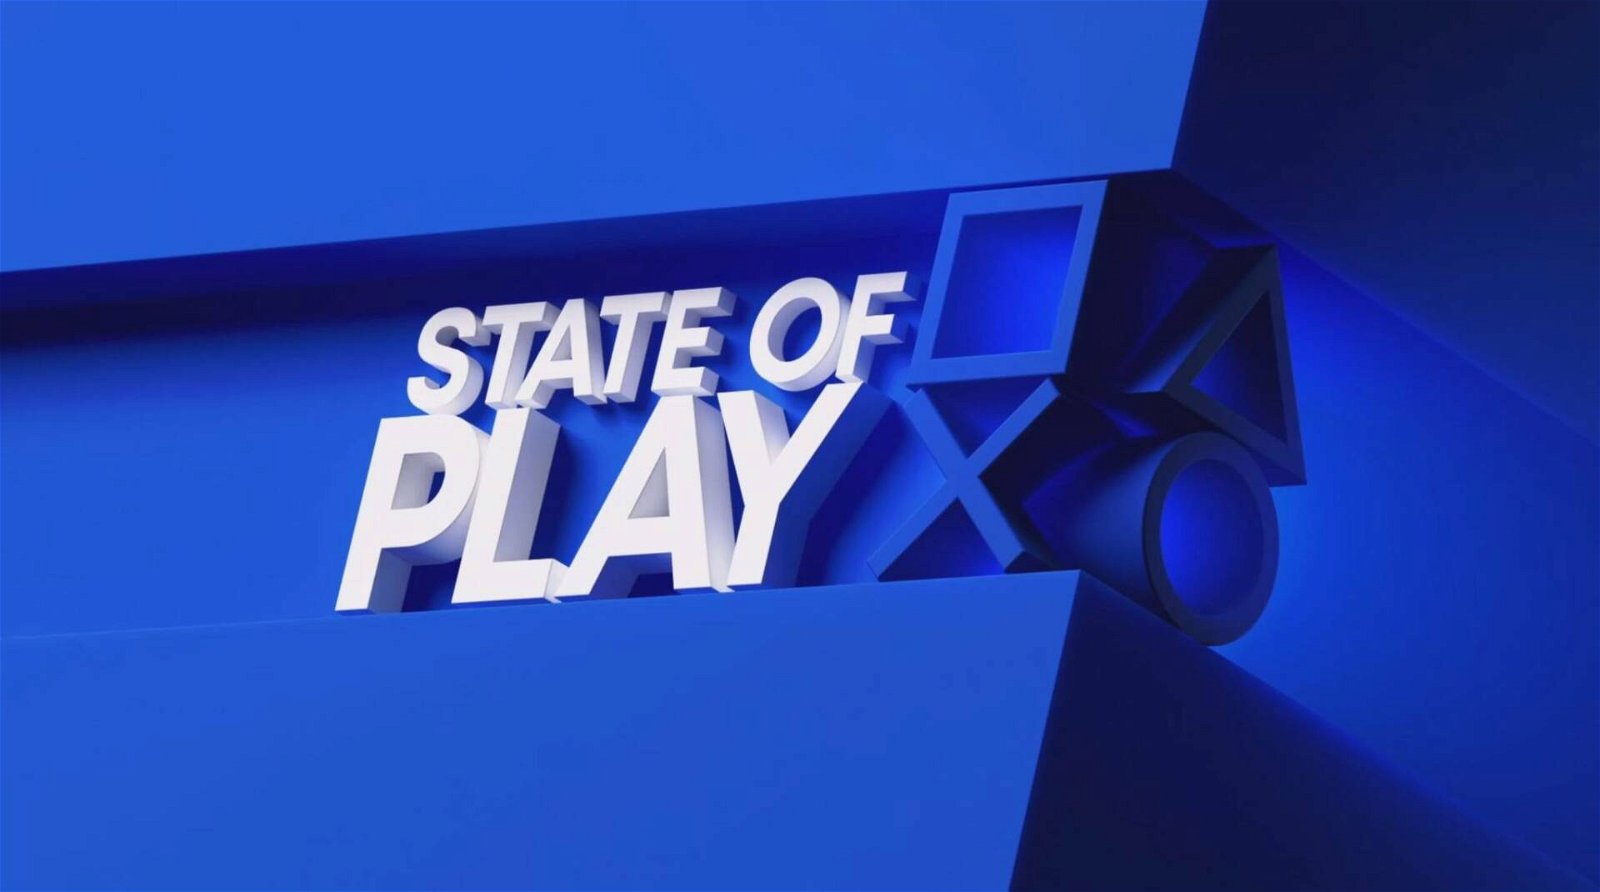 Immagine di PlayStation vorrebbe chiudere l'anno con uno State of Play imminente, gli indizi